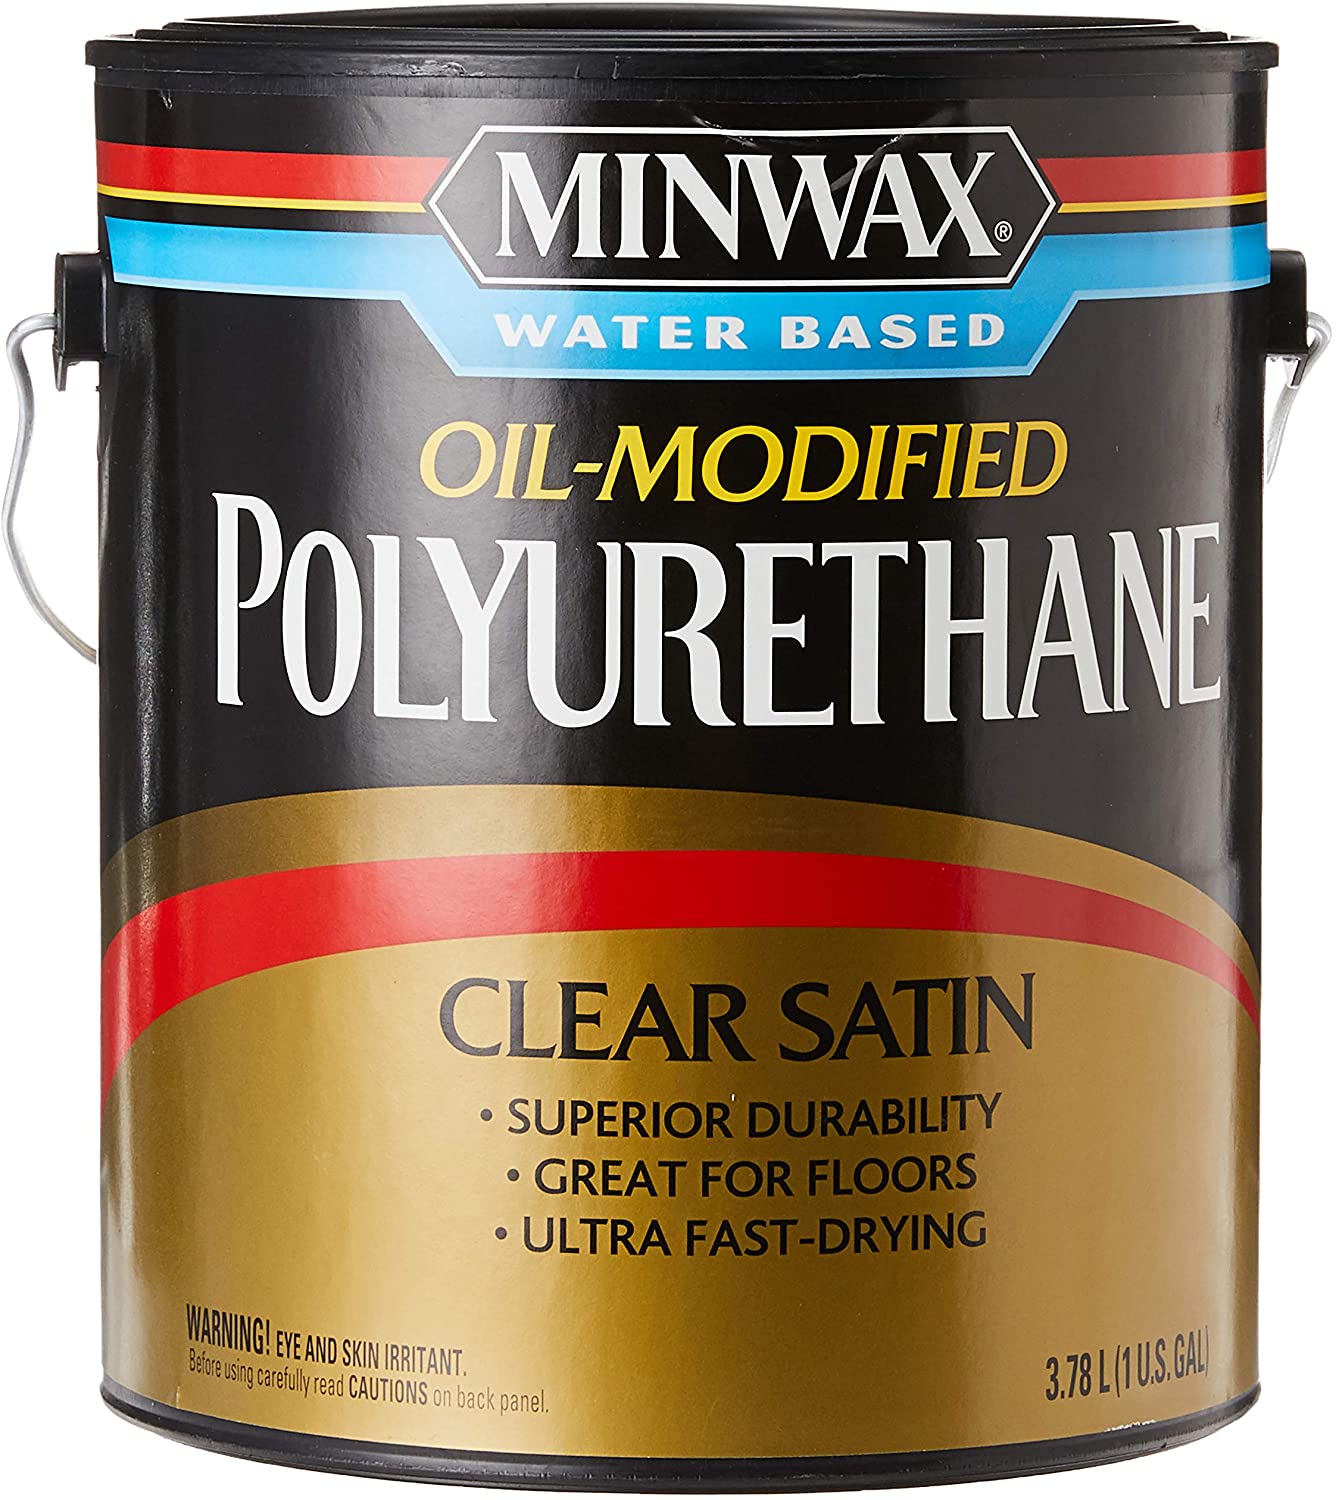 5 Best Water Based Polyurethane for Hardwood Floors ★ That Painter